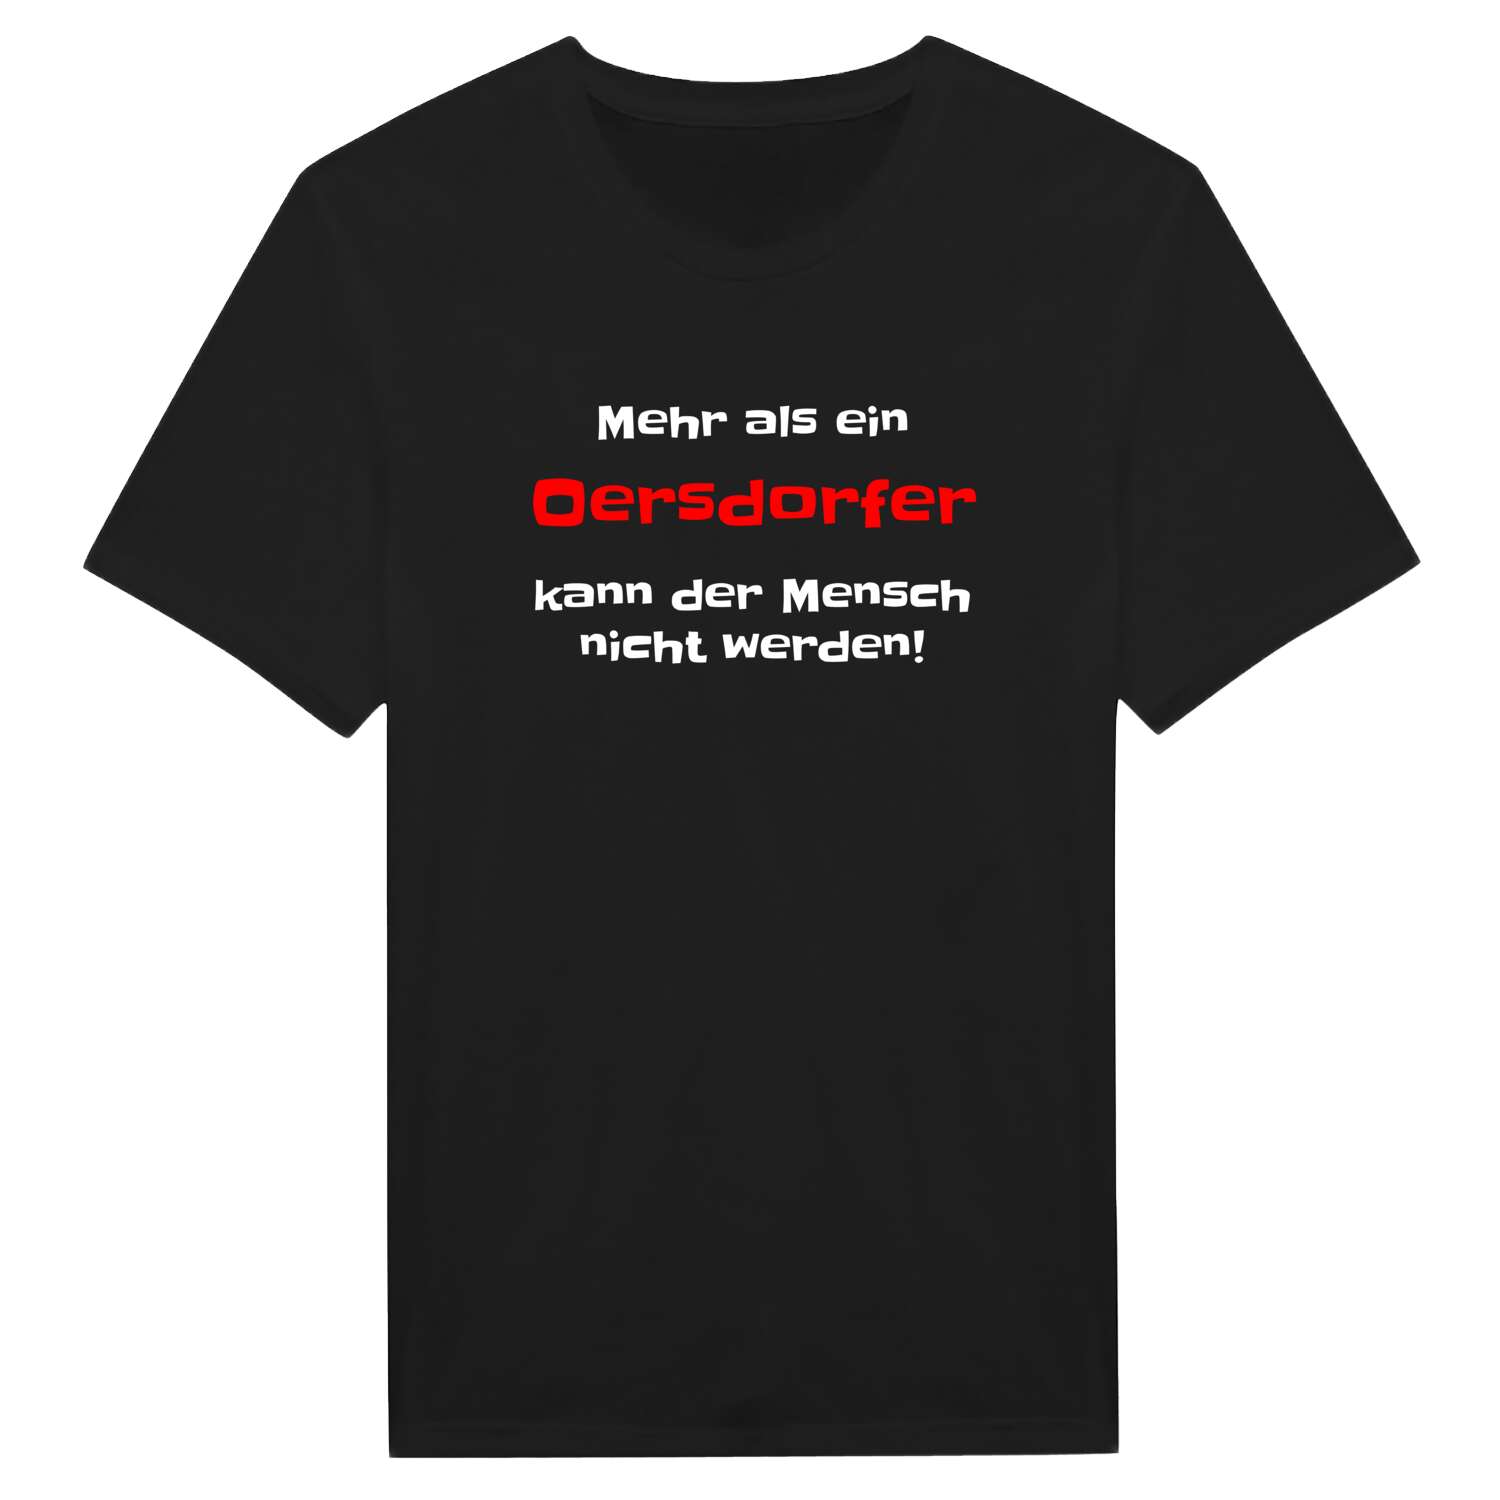 Oersdorf T-Shirt »Mehr als ein«